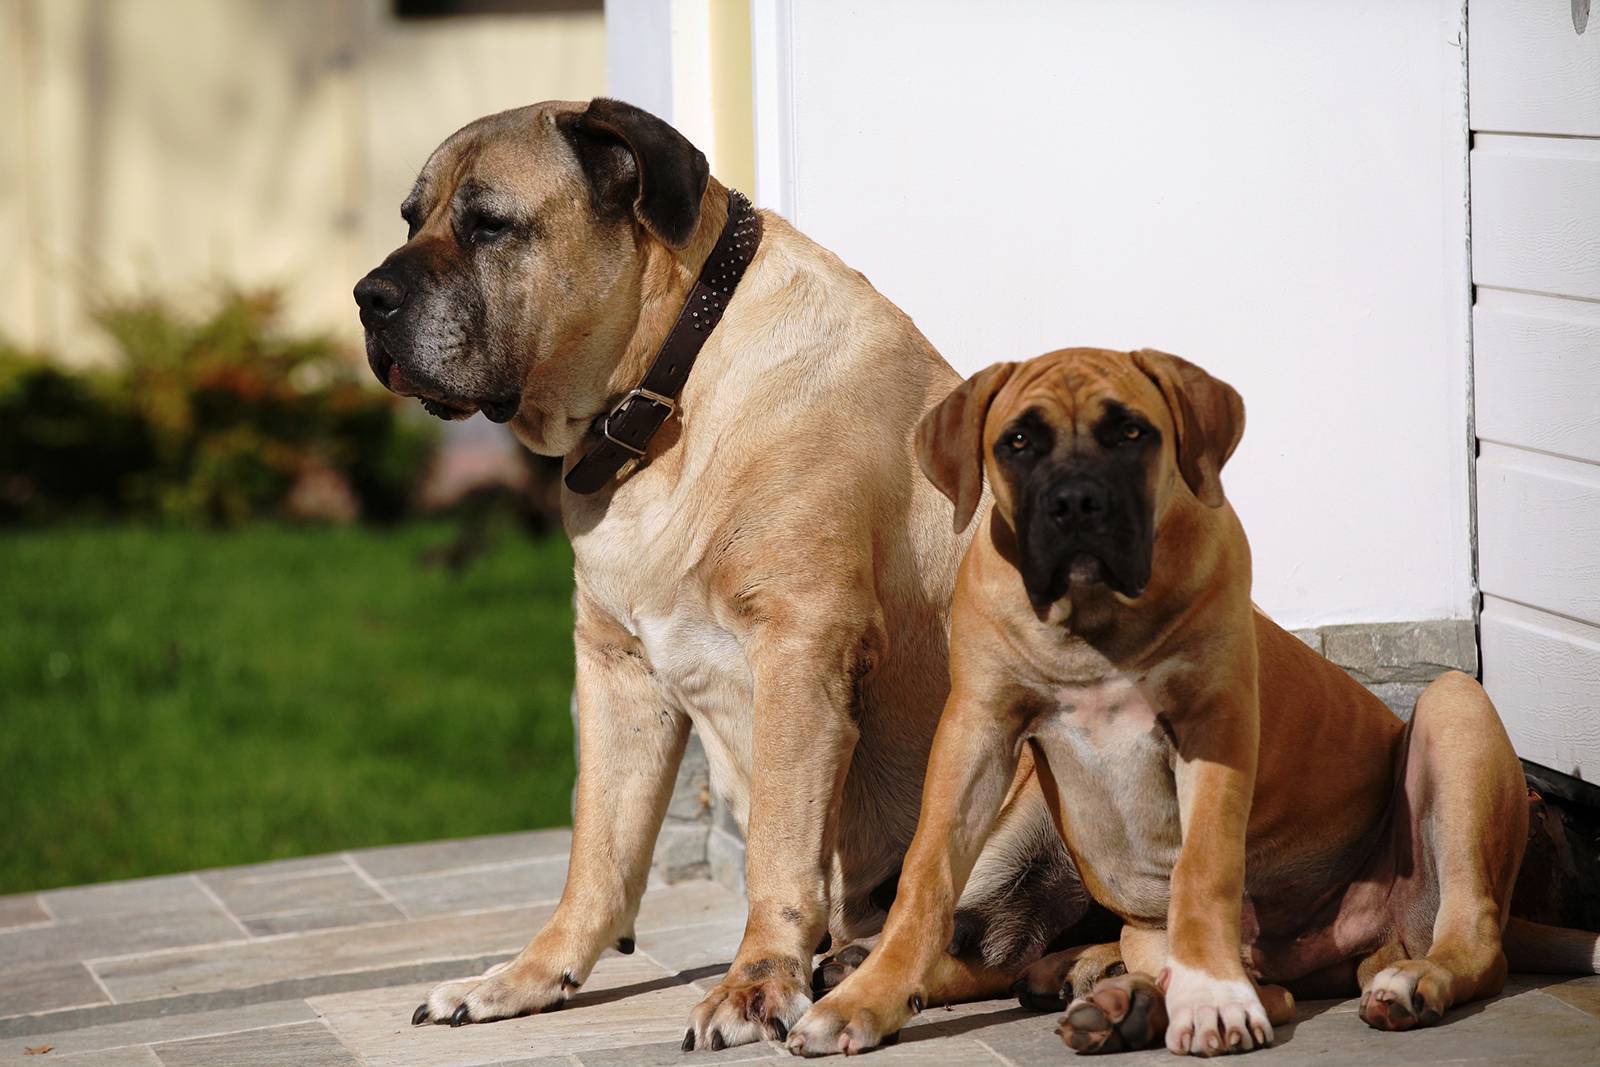 Молосская группа собак: история происхождения и разновидности пород